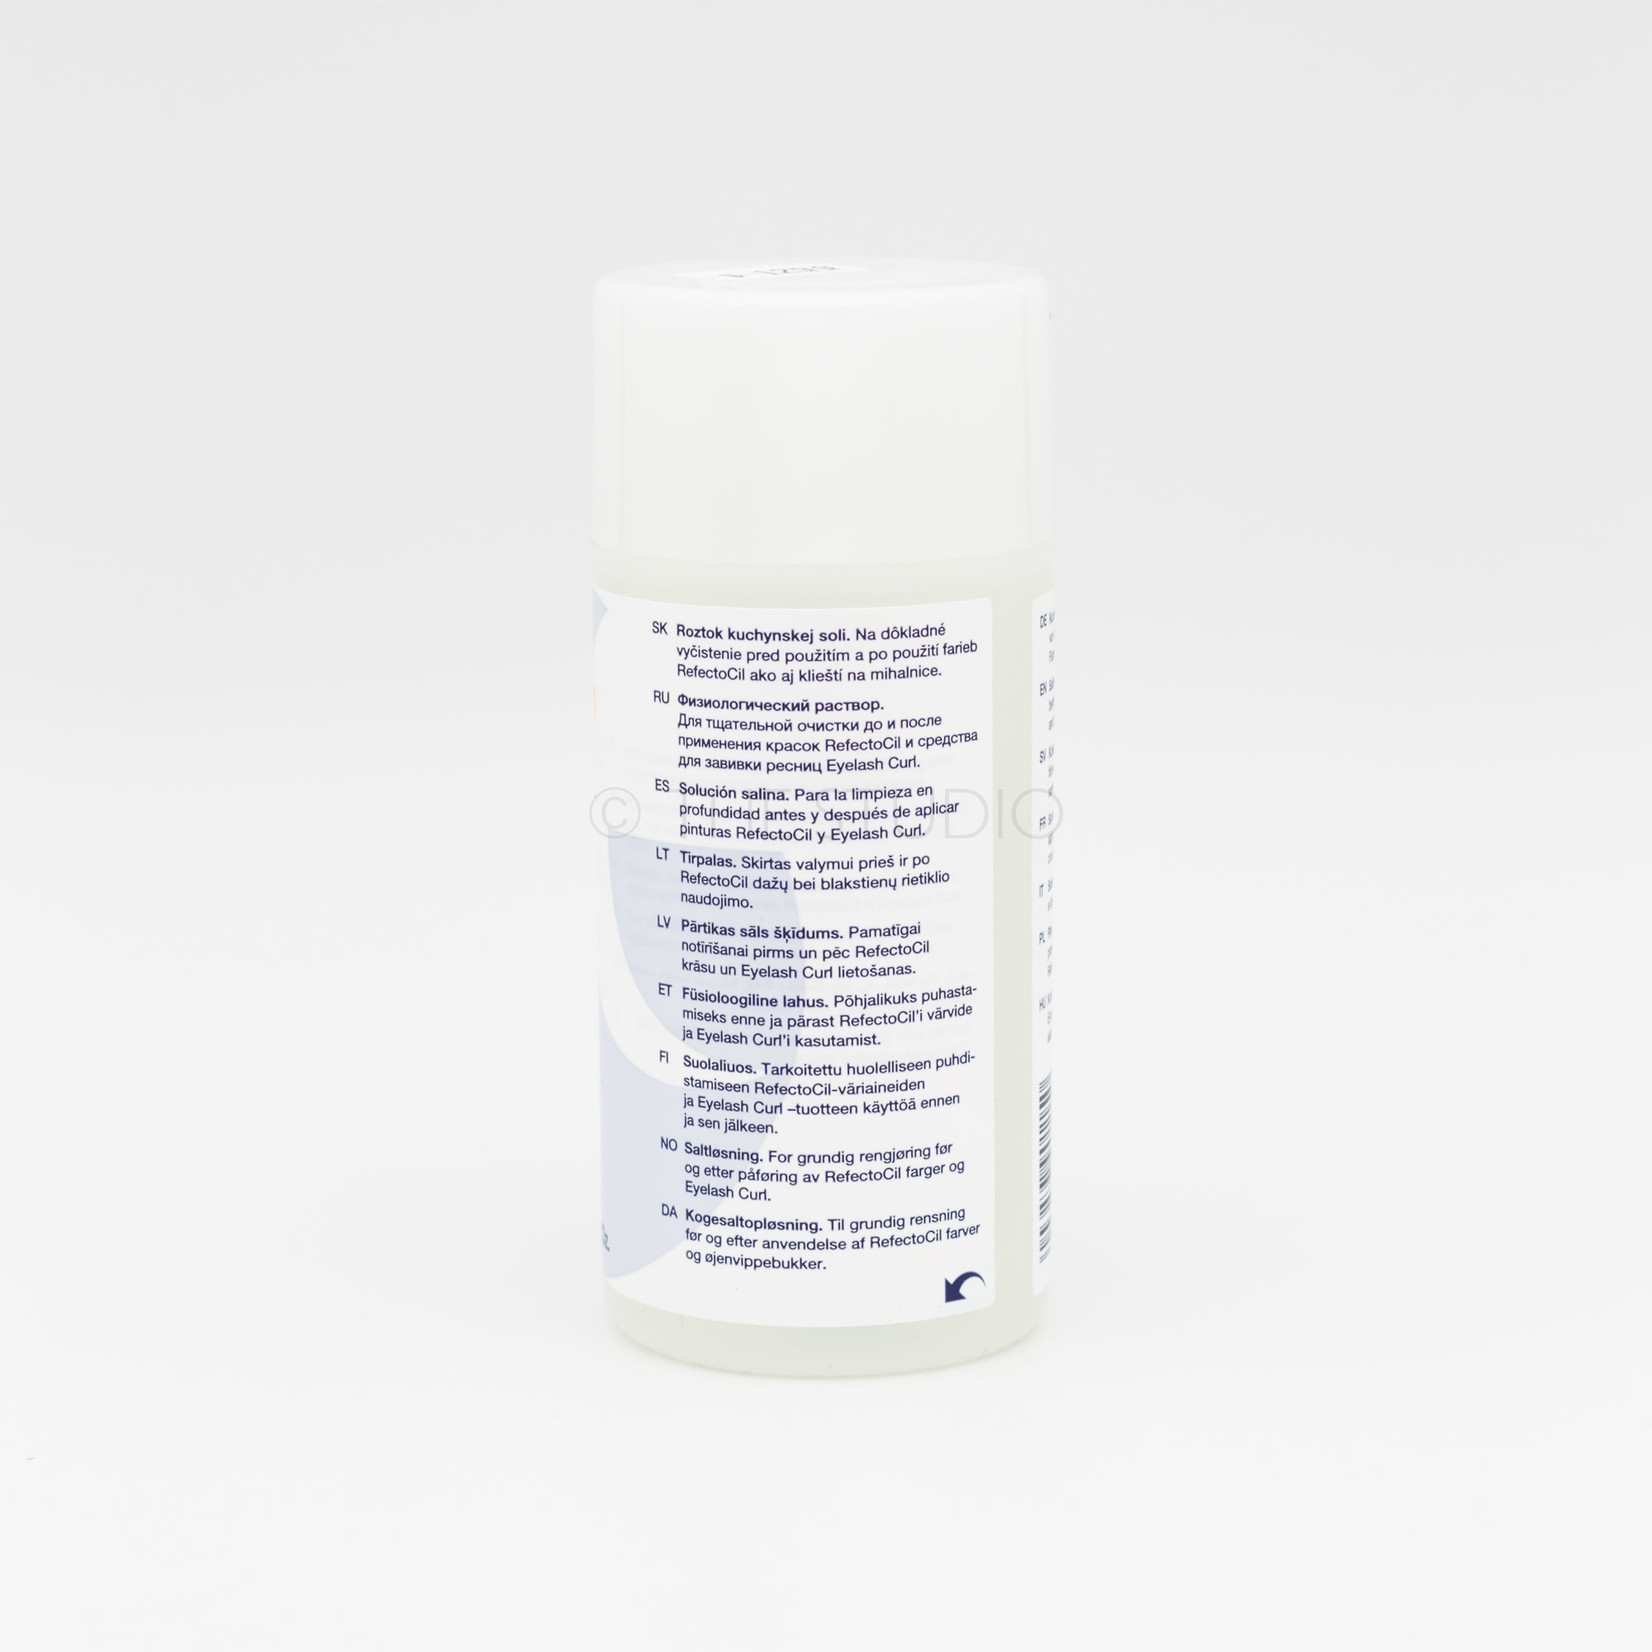 RefectoCil RefectoCil - Saline Solution - 5 oz